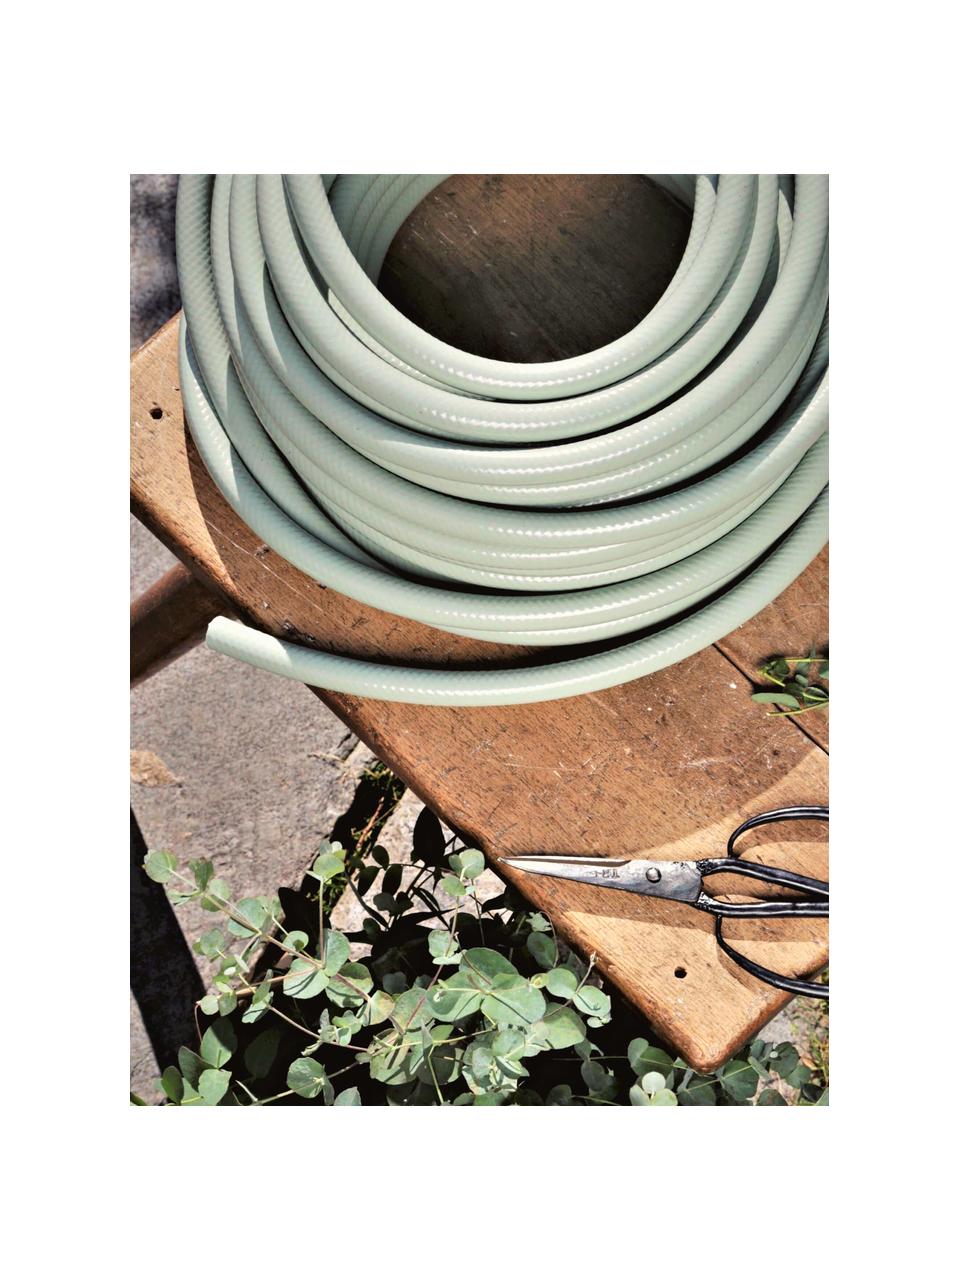 Wąż ogrodowy Gentle, różne rozmiary, Tworzywo sztuczne PVC z recyklingu, Miętowy zielony, D 10 m